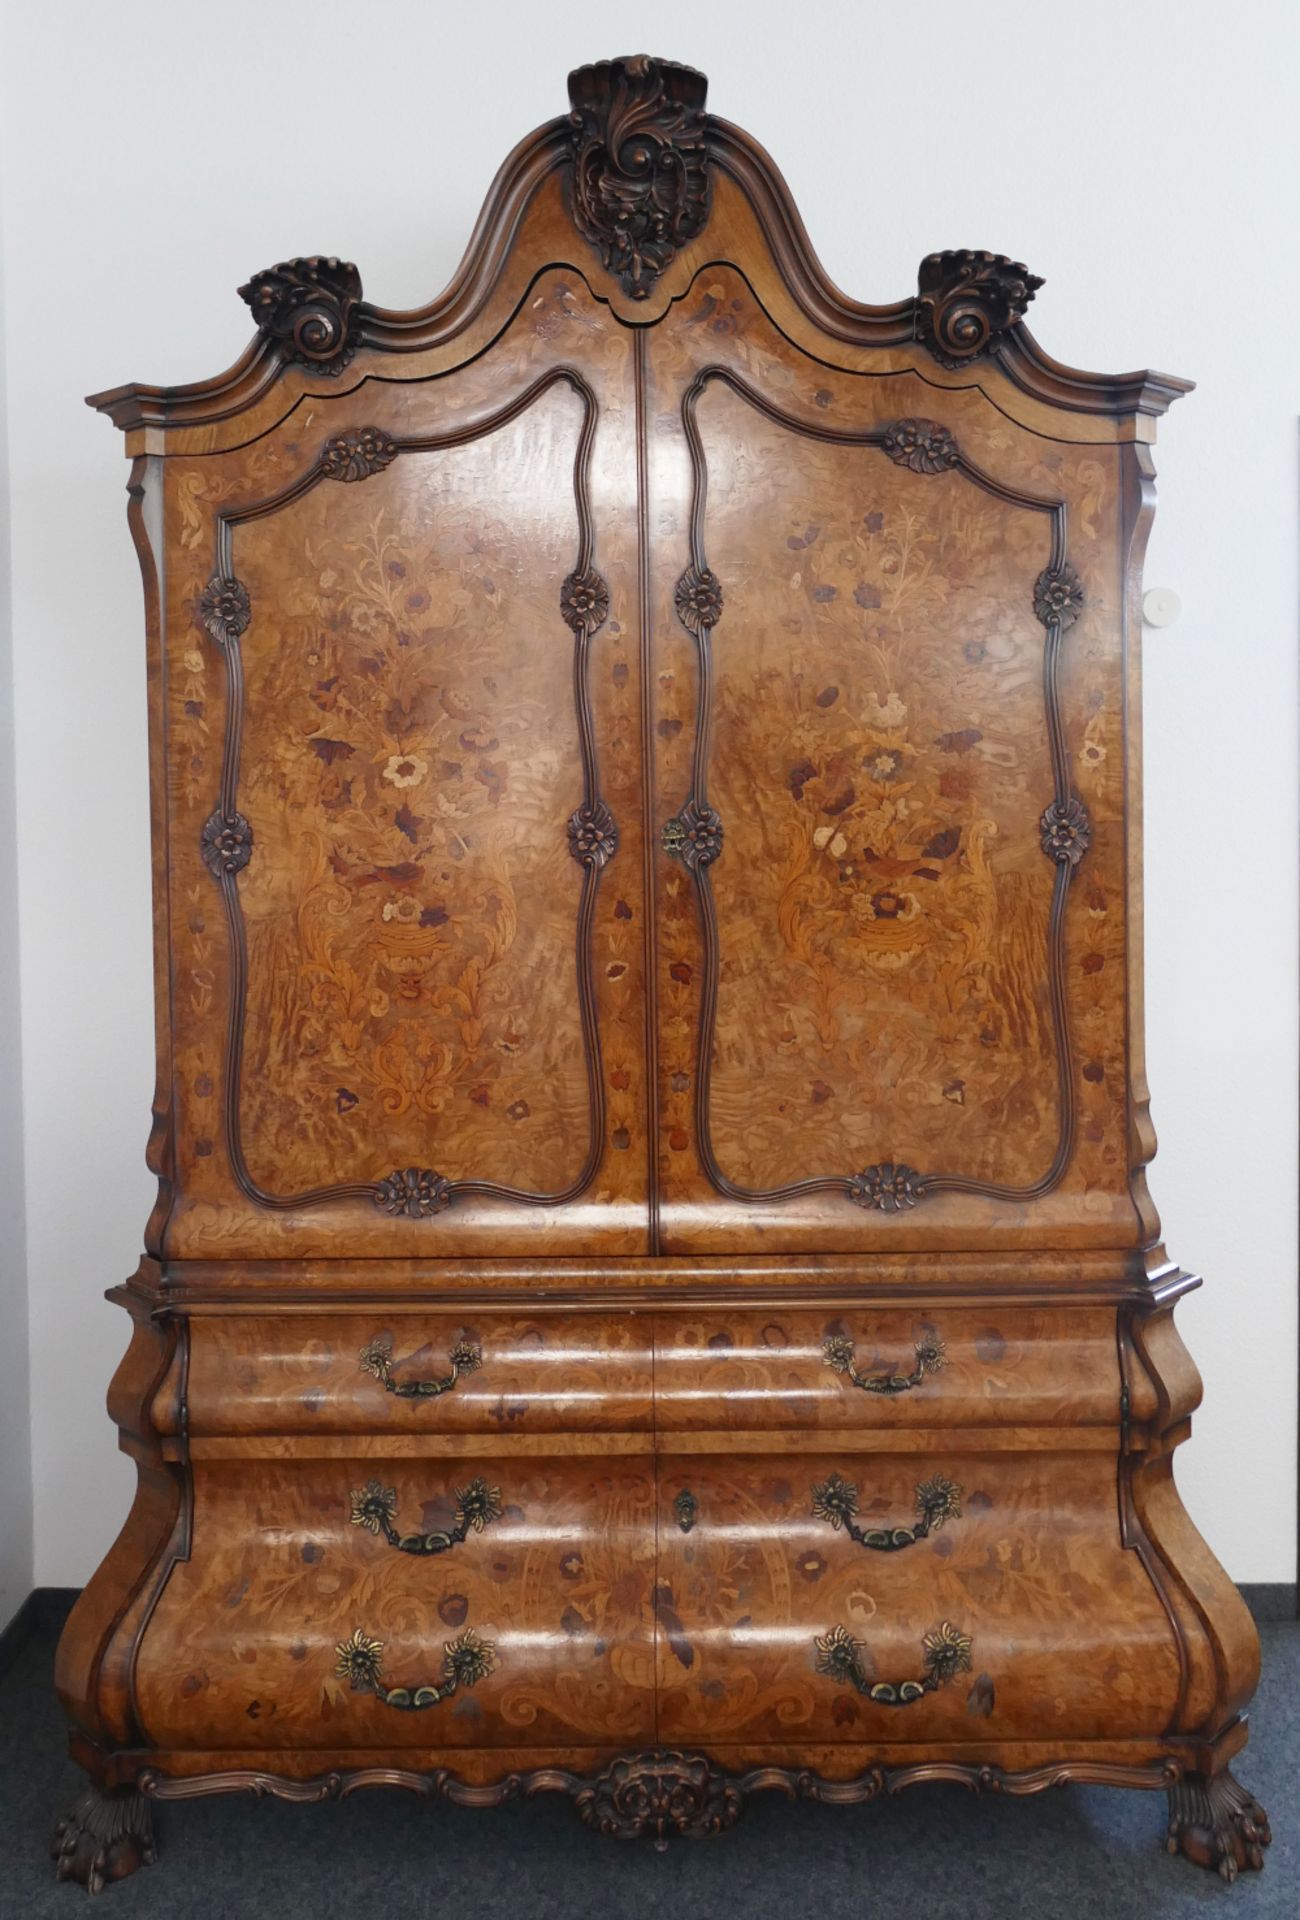 1 Prunkschrank Stilmöbel Barock-Stil, reich intarsiert und geschnitzt, Löwenfüße, ca H 242 x B 160 x